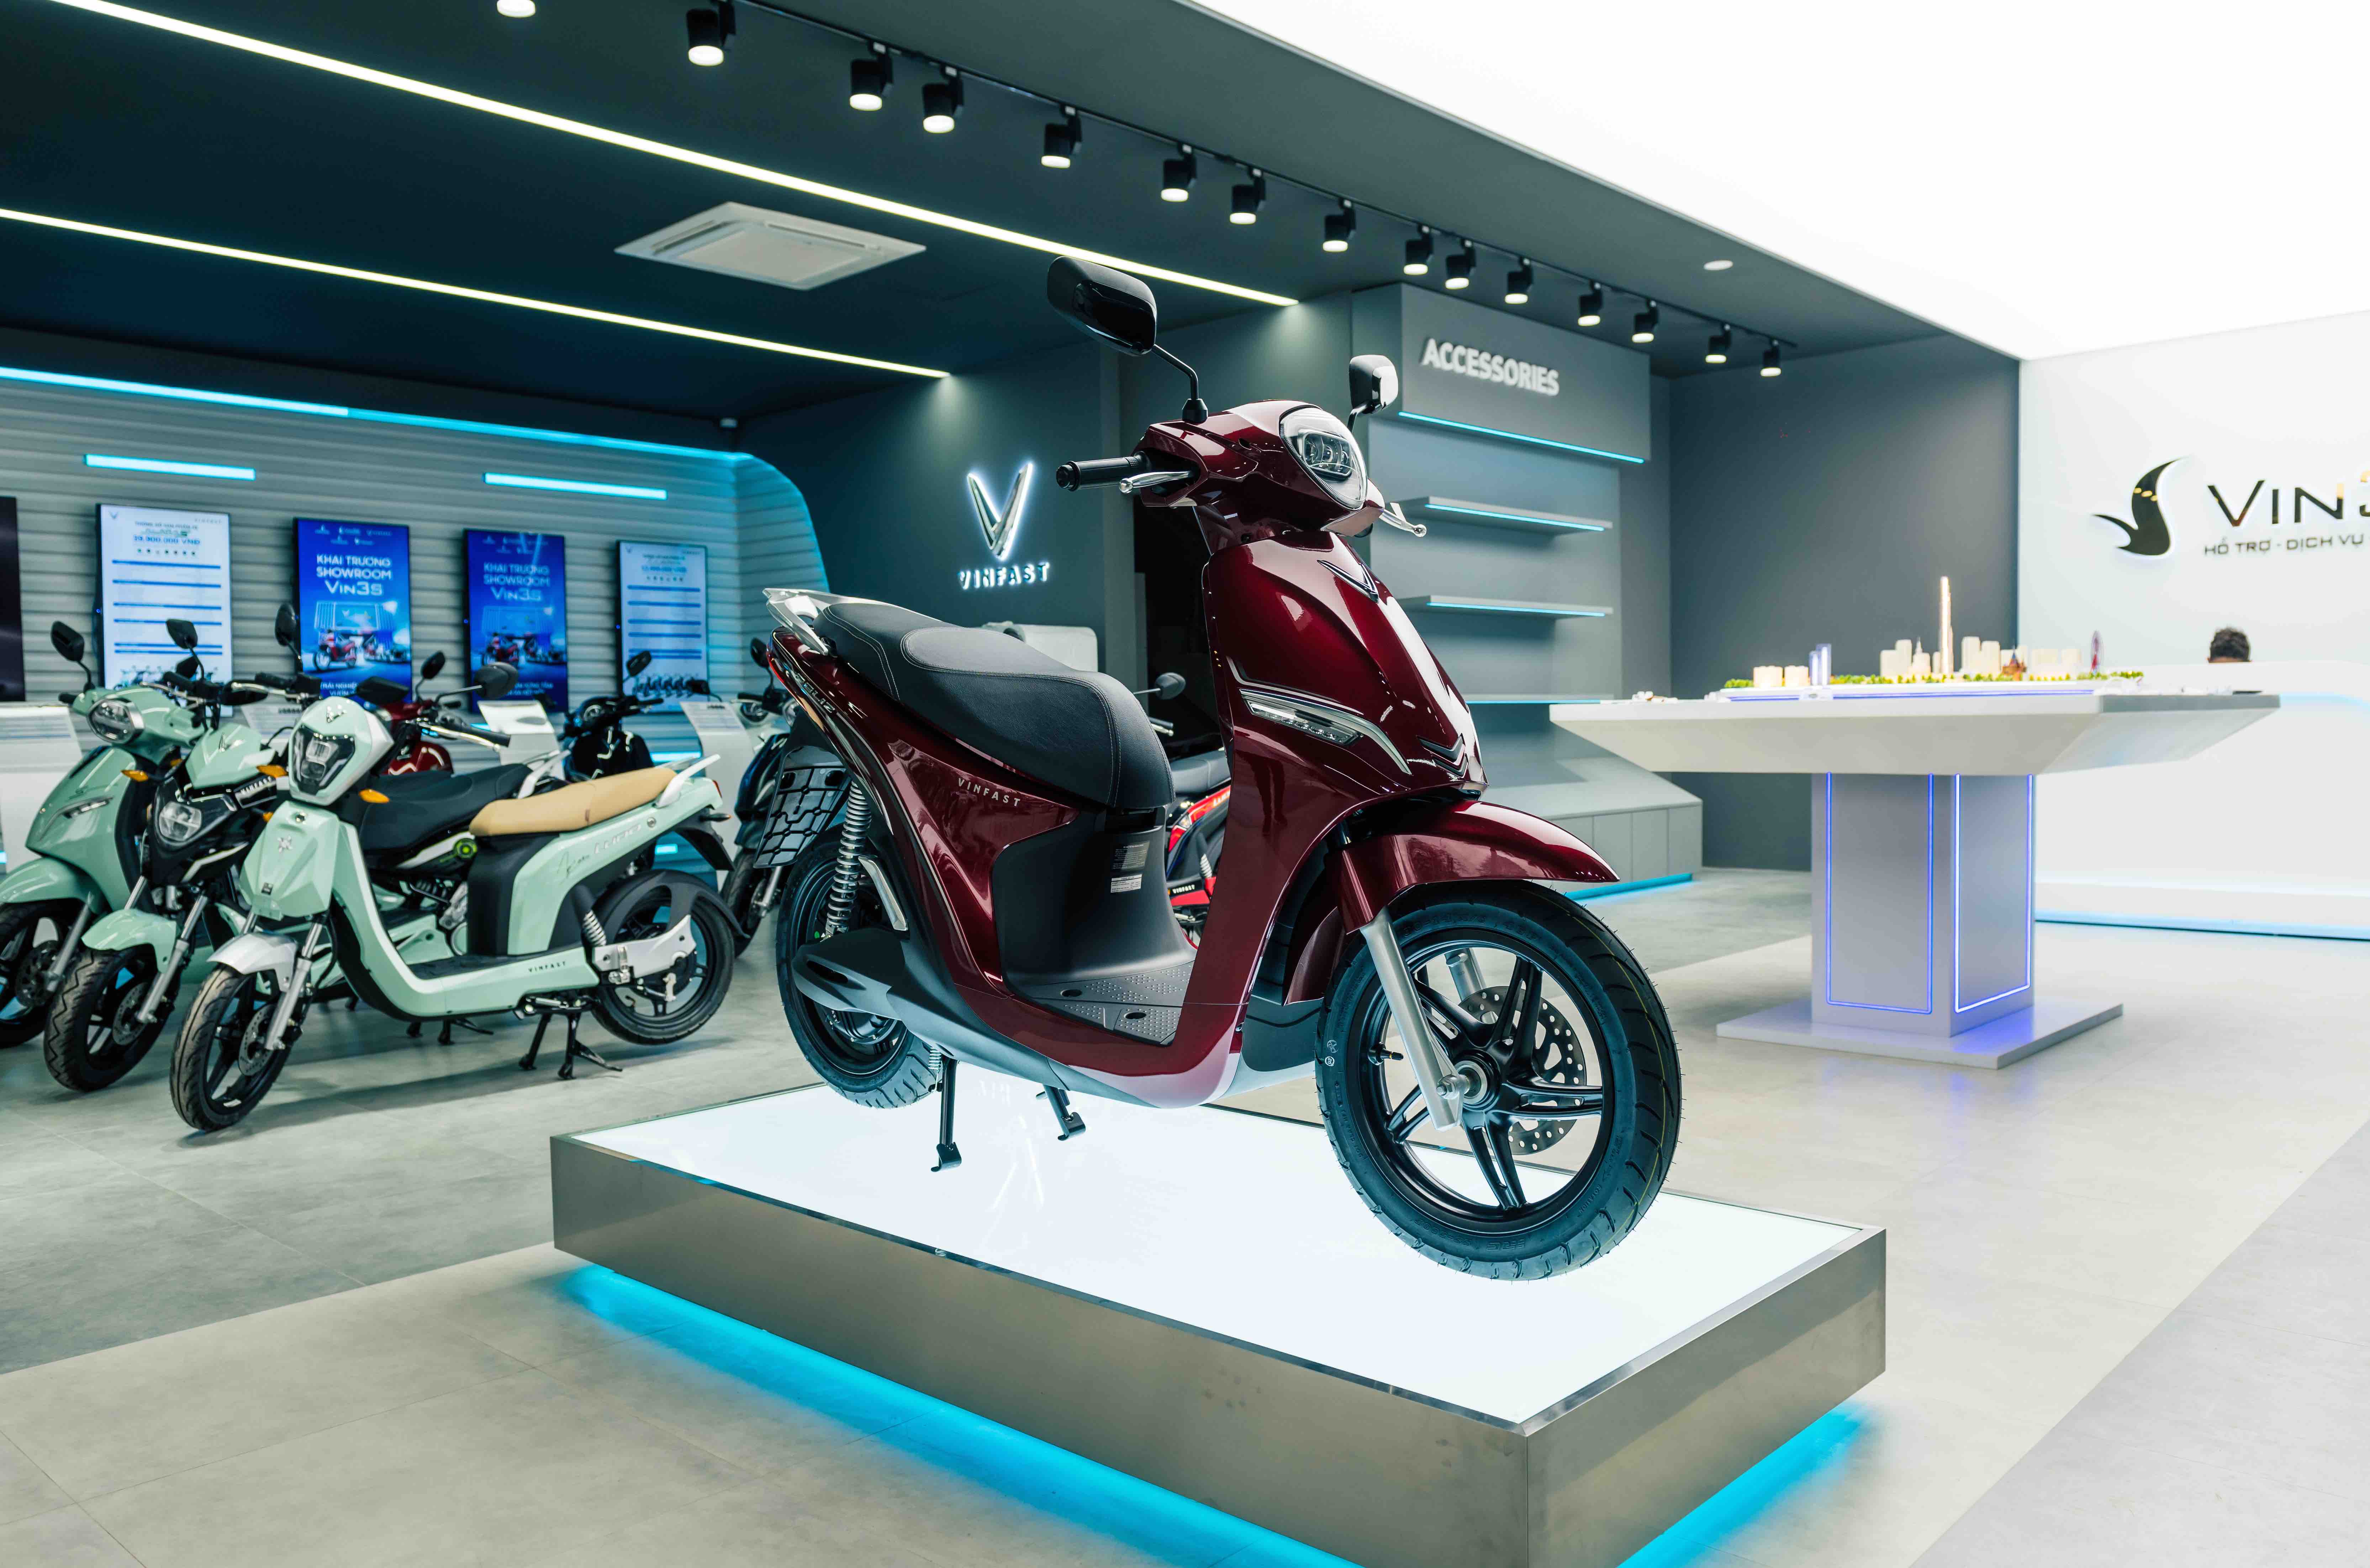 VinFast liên tục ra mắt các mẫu xe máy điện thời trang, công nghệ hiện đại với chính sách bán hàng đột phá.